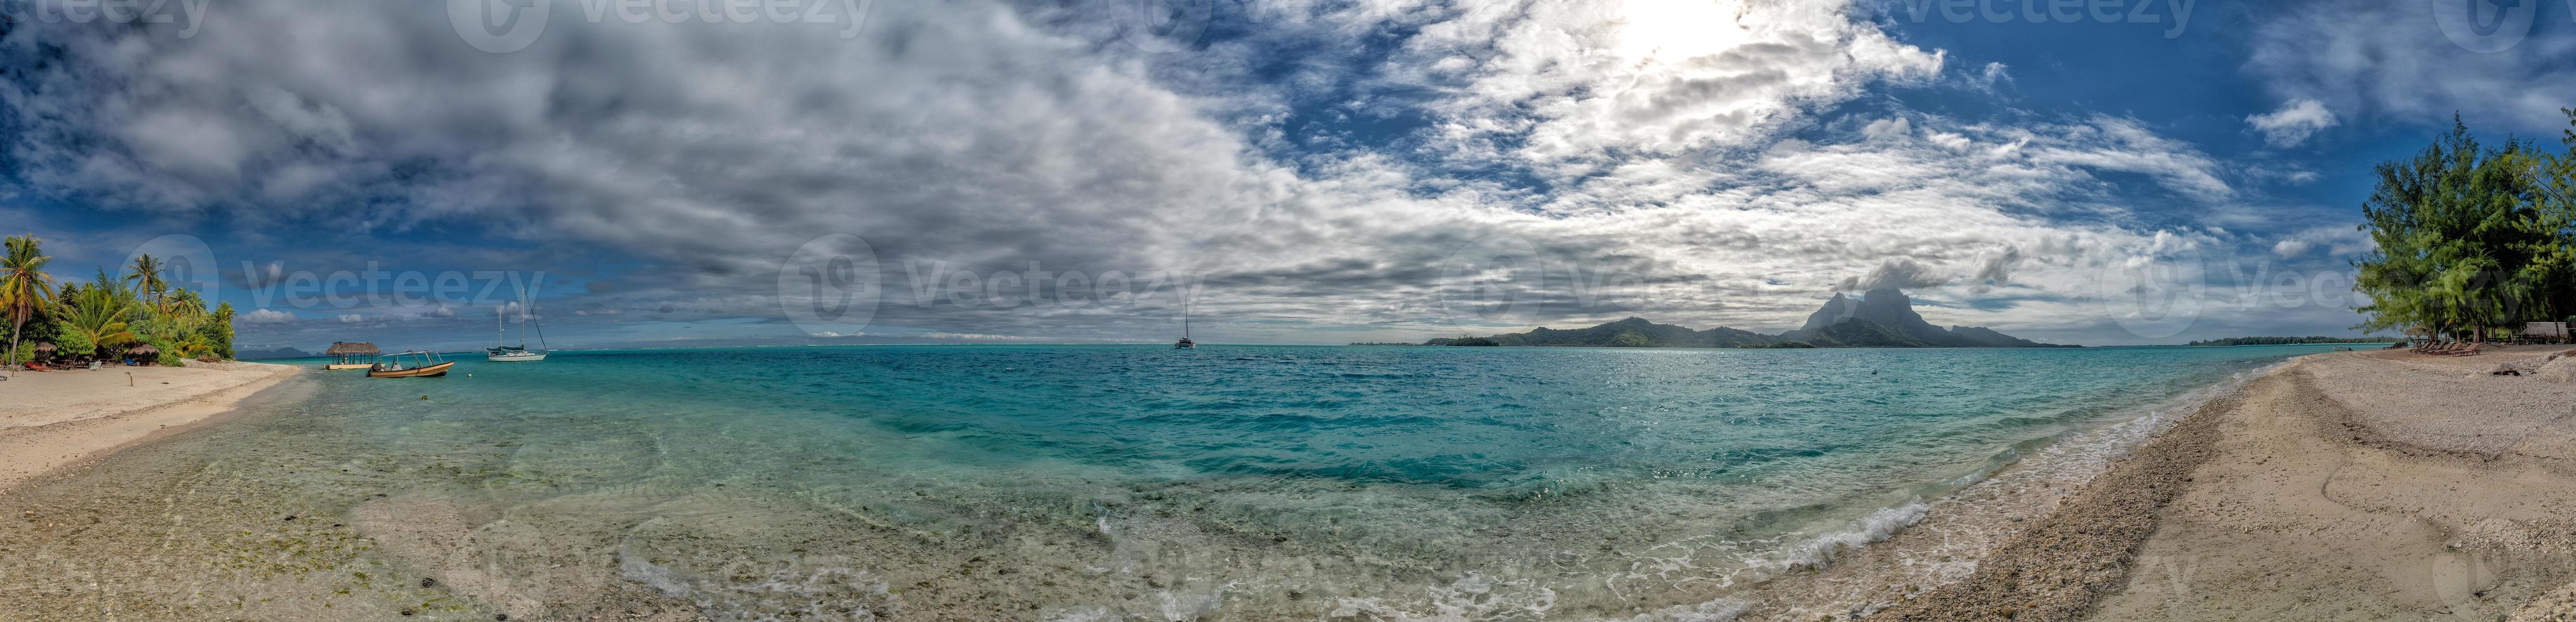 bora bora french polynesia blue lagoon turquoise crystal water photo